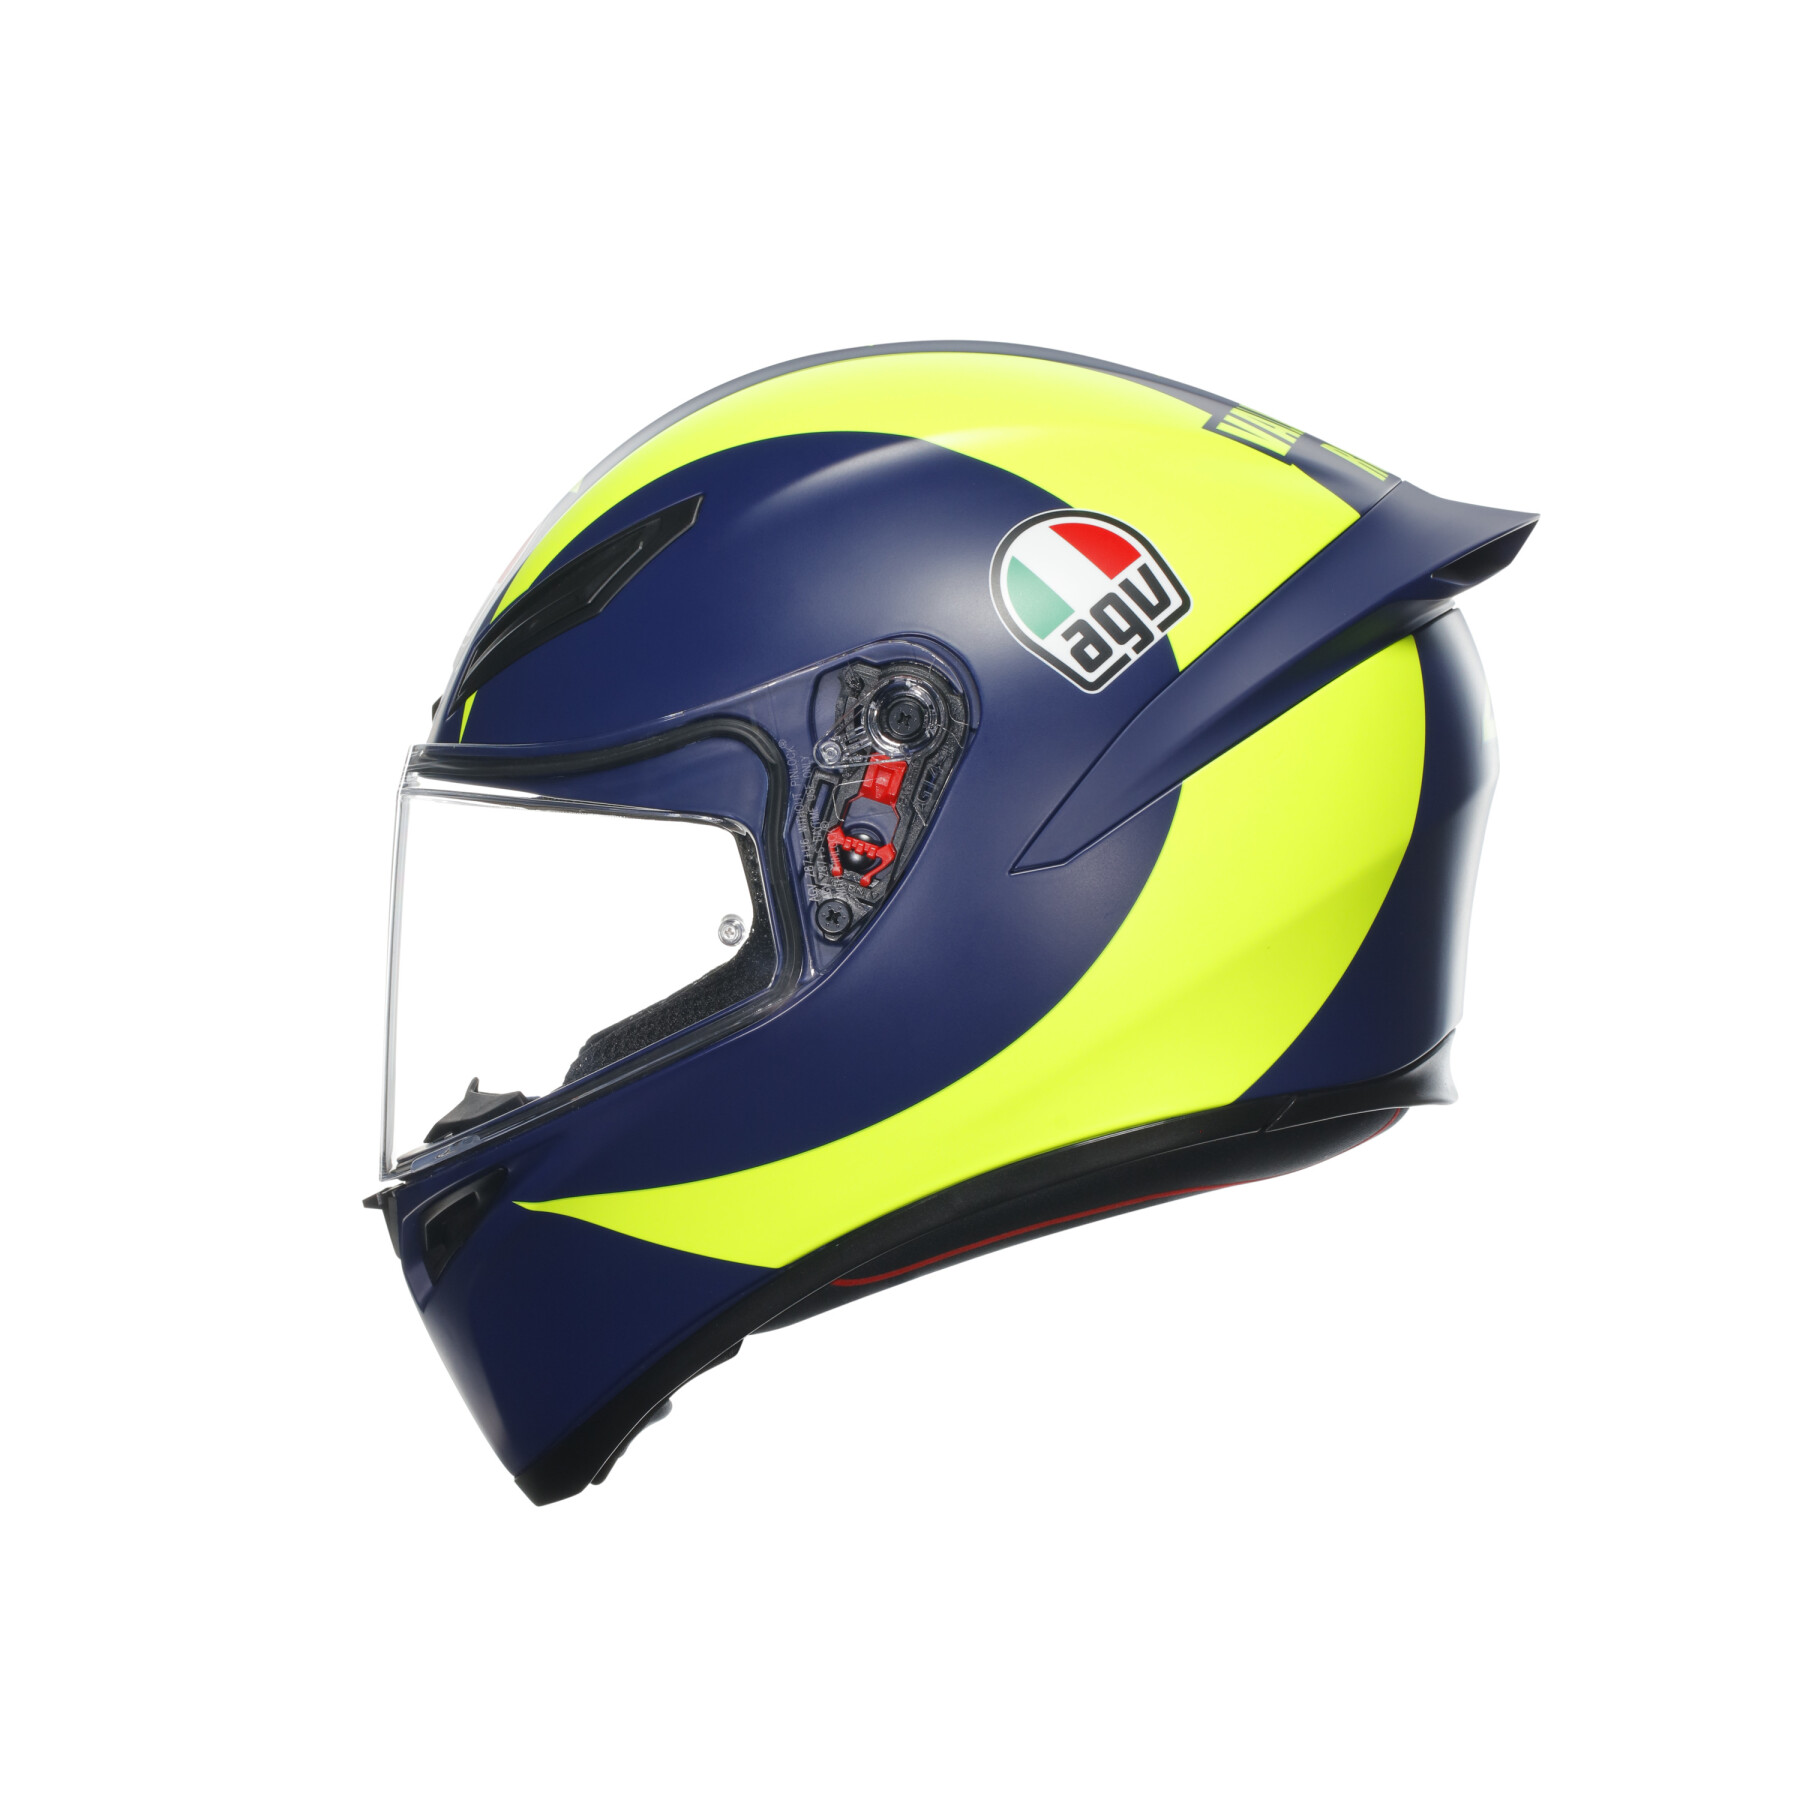 Full face motorcycle helmet AGV K1 S Soleluna 2018